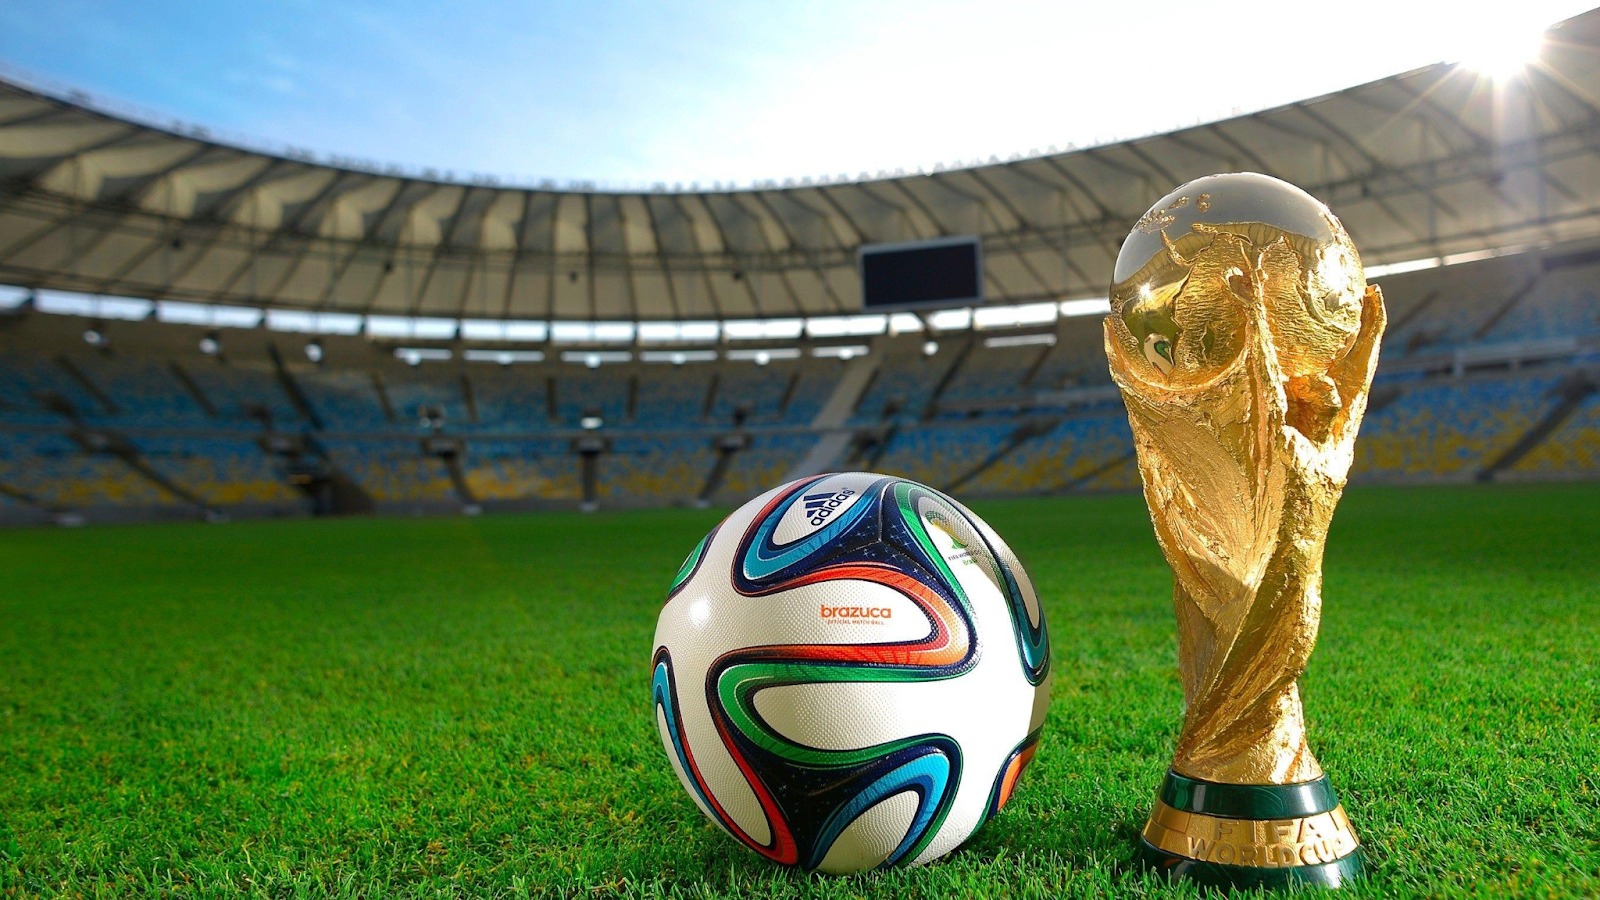 "ein Jahrhundertprojekt" für Deutschland bekam FIFA-Unterstützung für die Zukunft